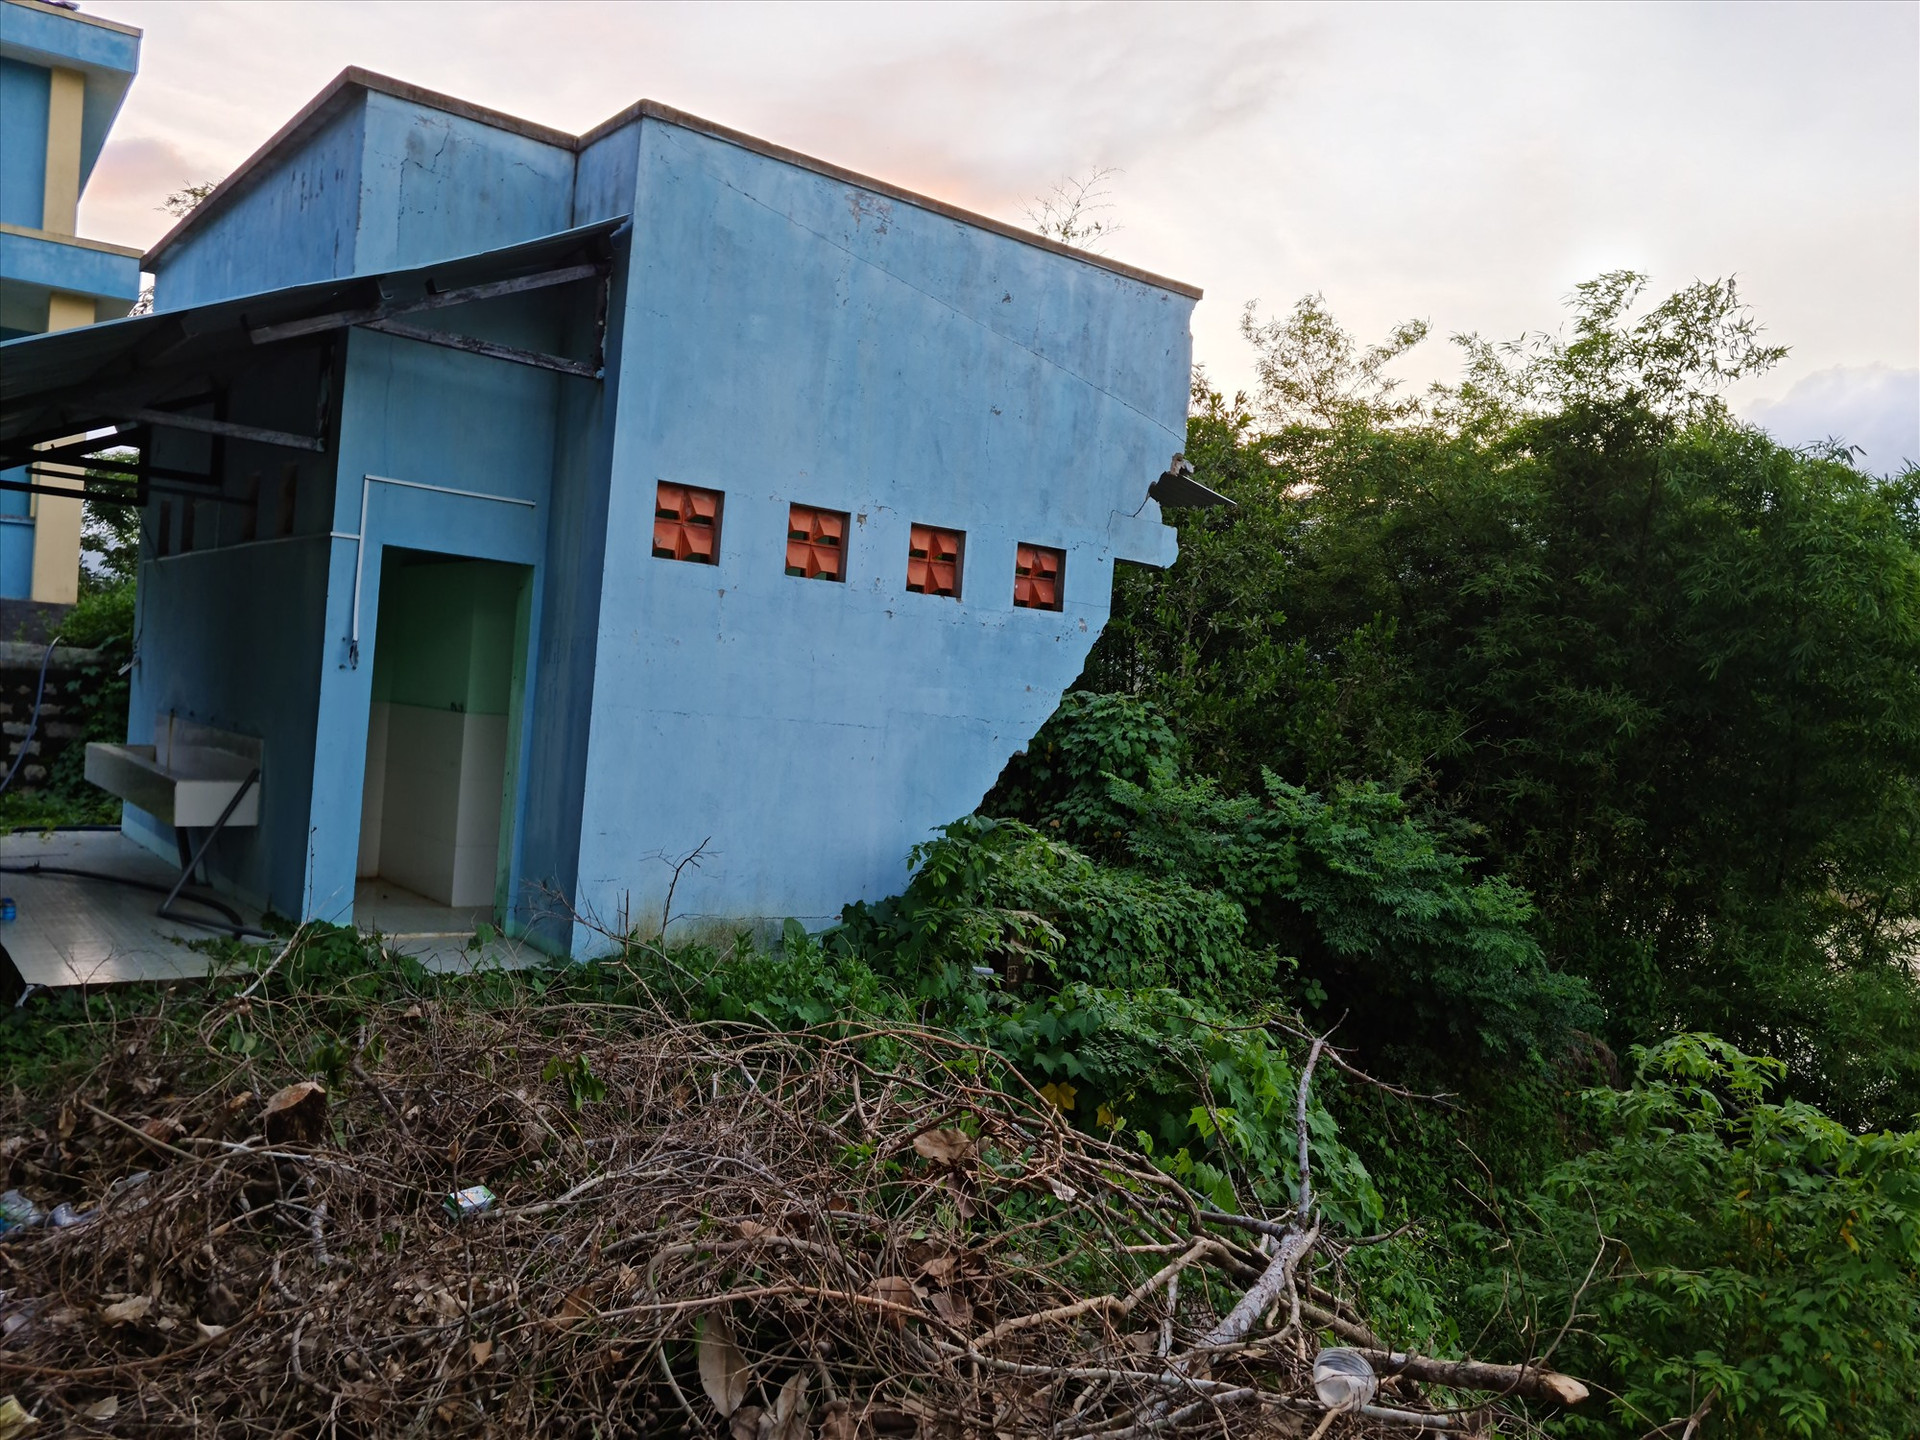 Khu nhà vệ sinh mới xây dựng thuộc trường cấp 2 của xã Quế Trung bị sụp đổ do sạt lở. Ảnh: H.L